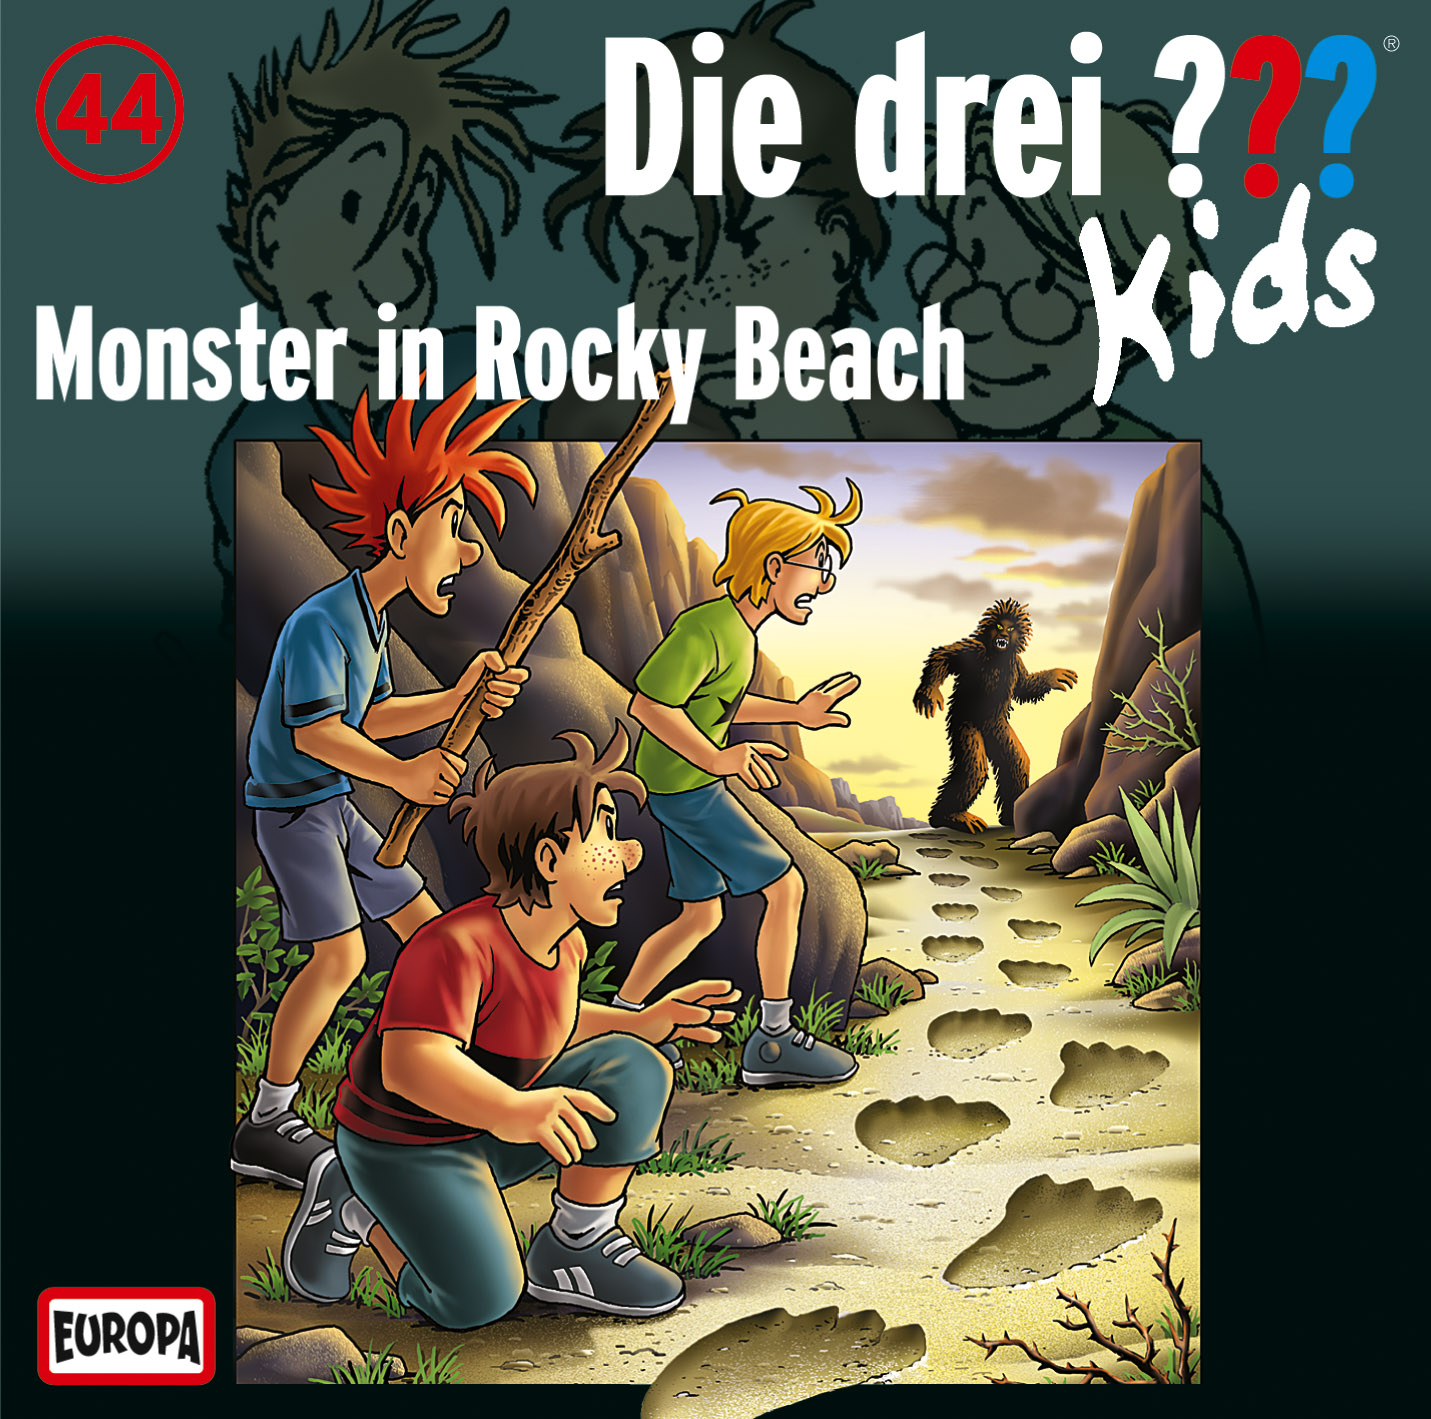 Die Drei ??? (Fragezeichen) Kids, Hörspiel-Folge 44: Monster in Rocky Beach